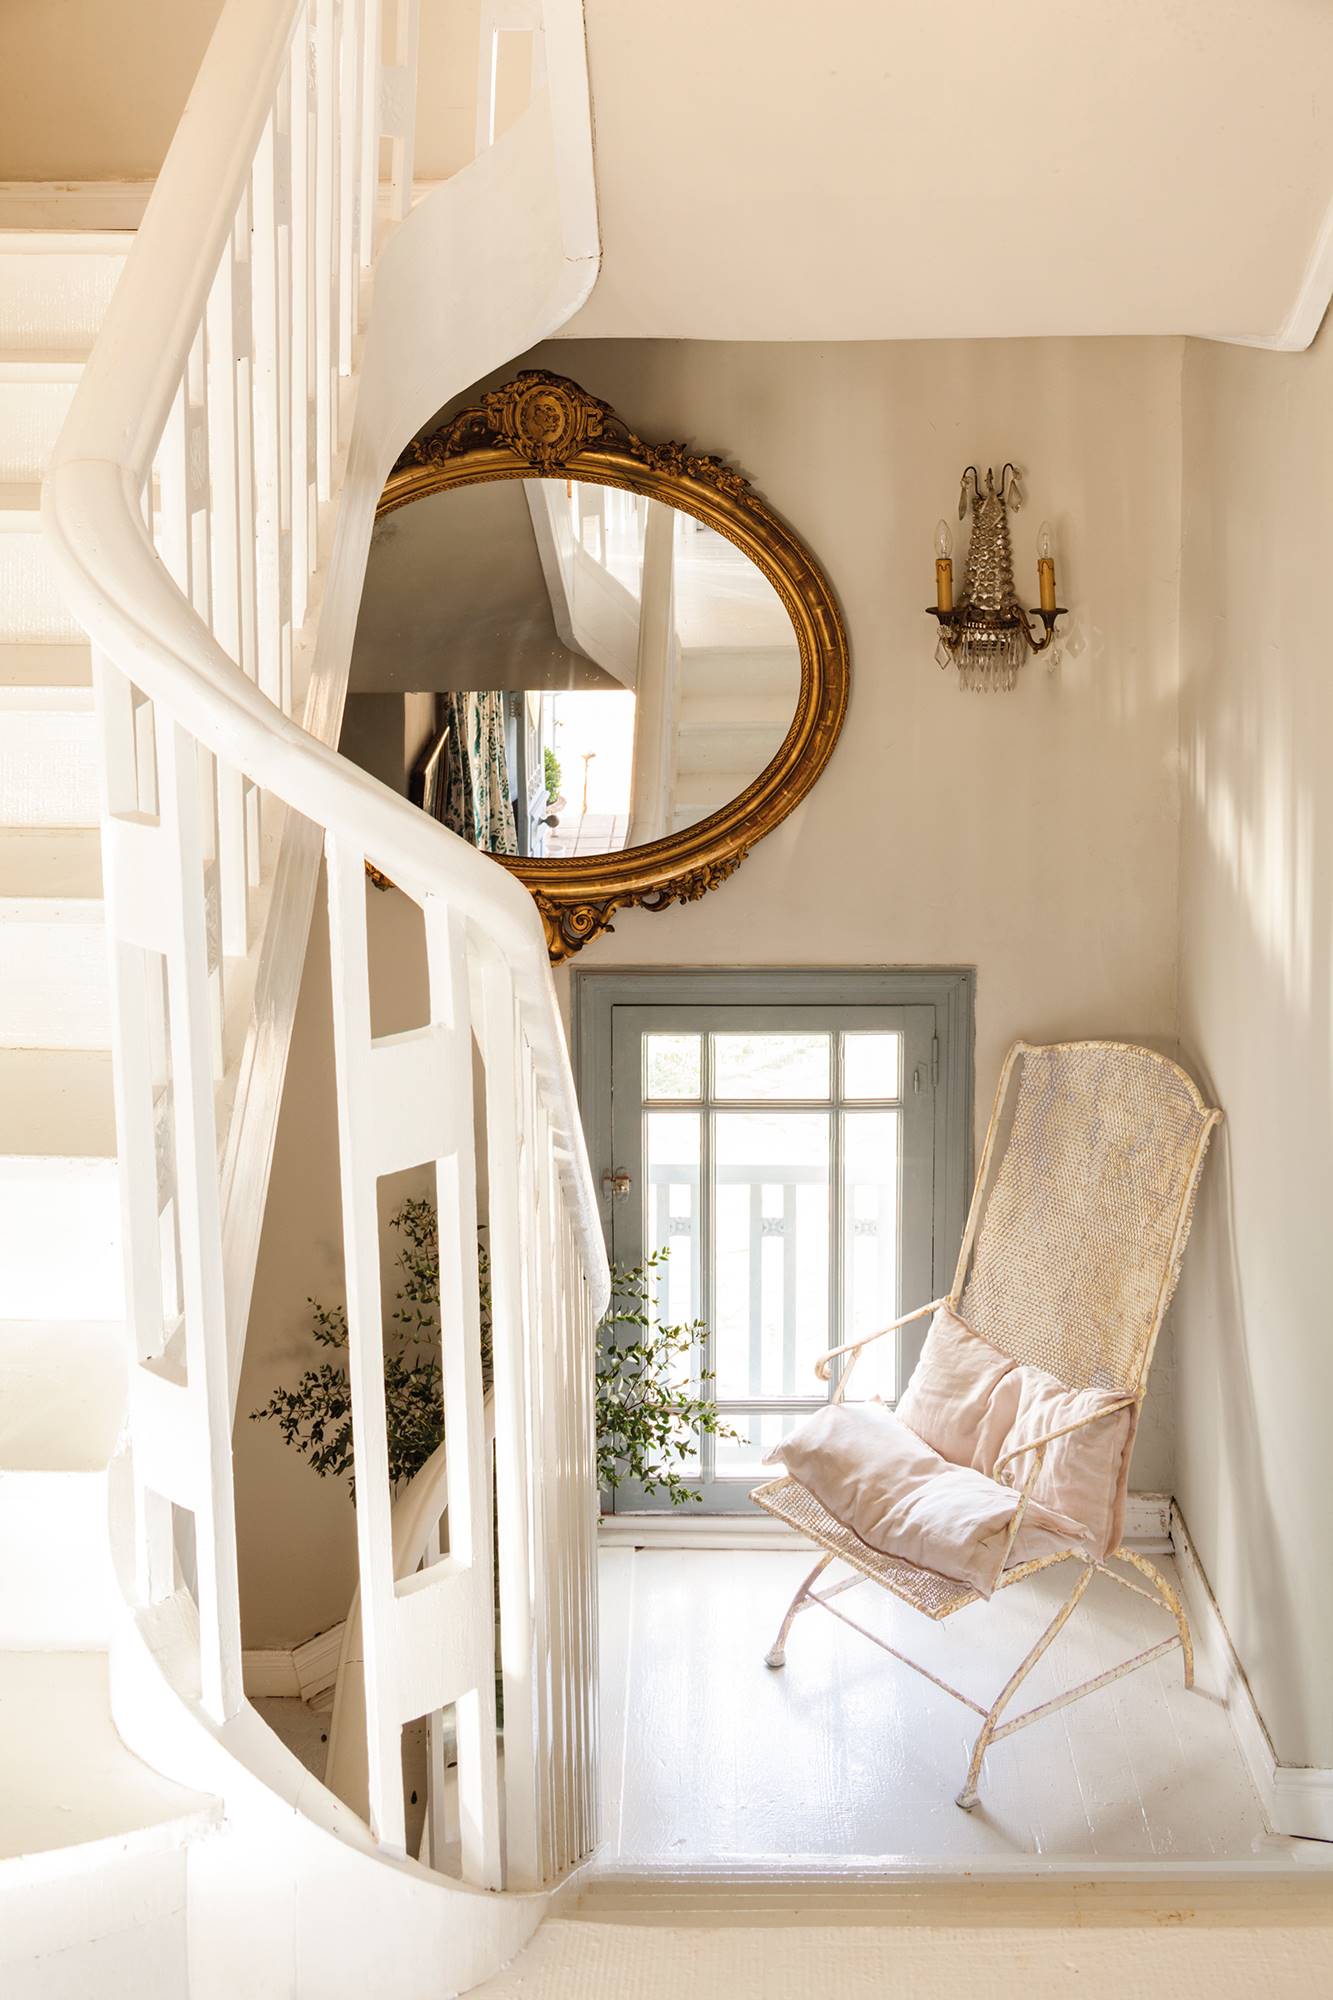 Escalera de madera blanca con silla de hierro blanca y espejo con marco dorado.